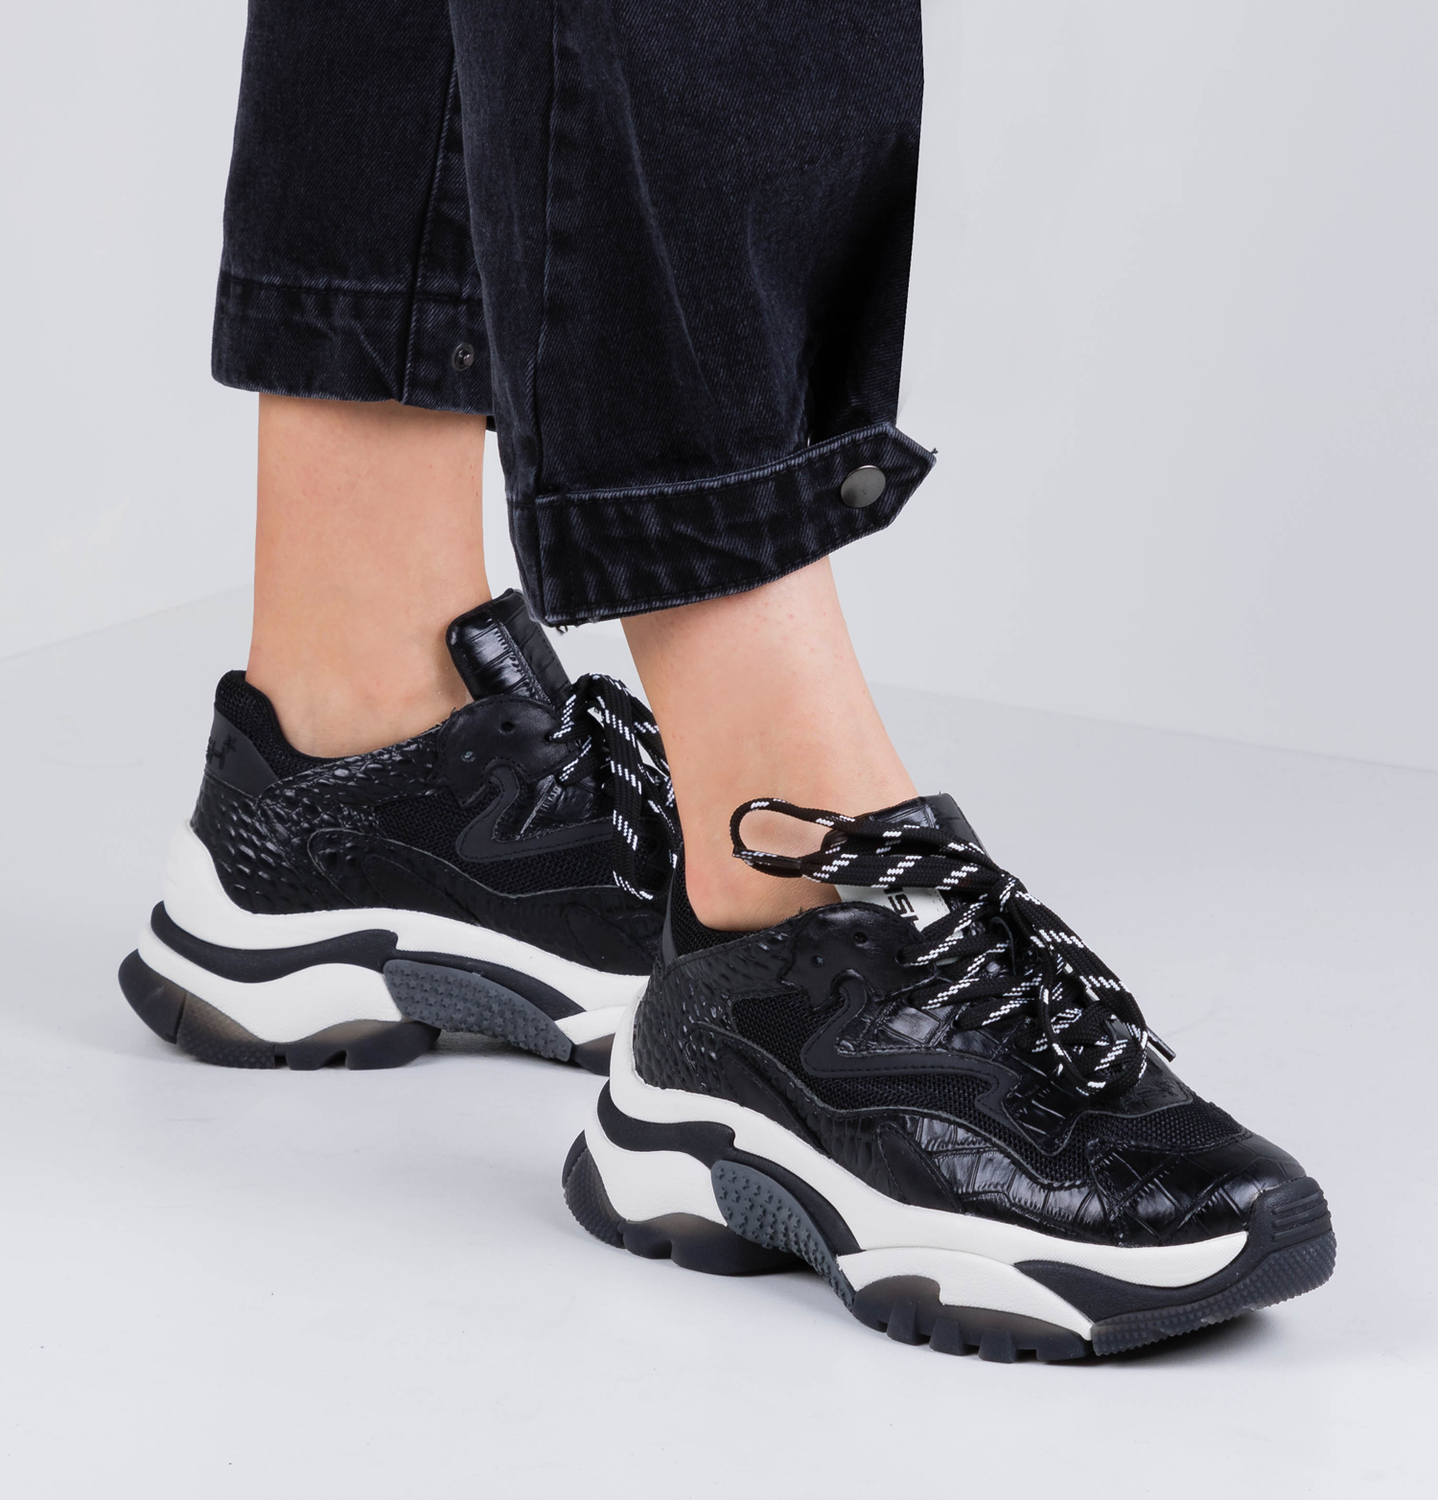 Ash sneakers black/ white